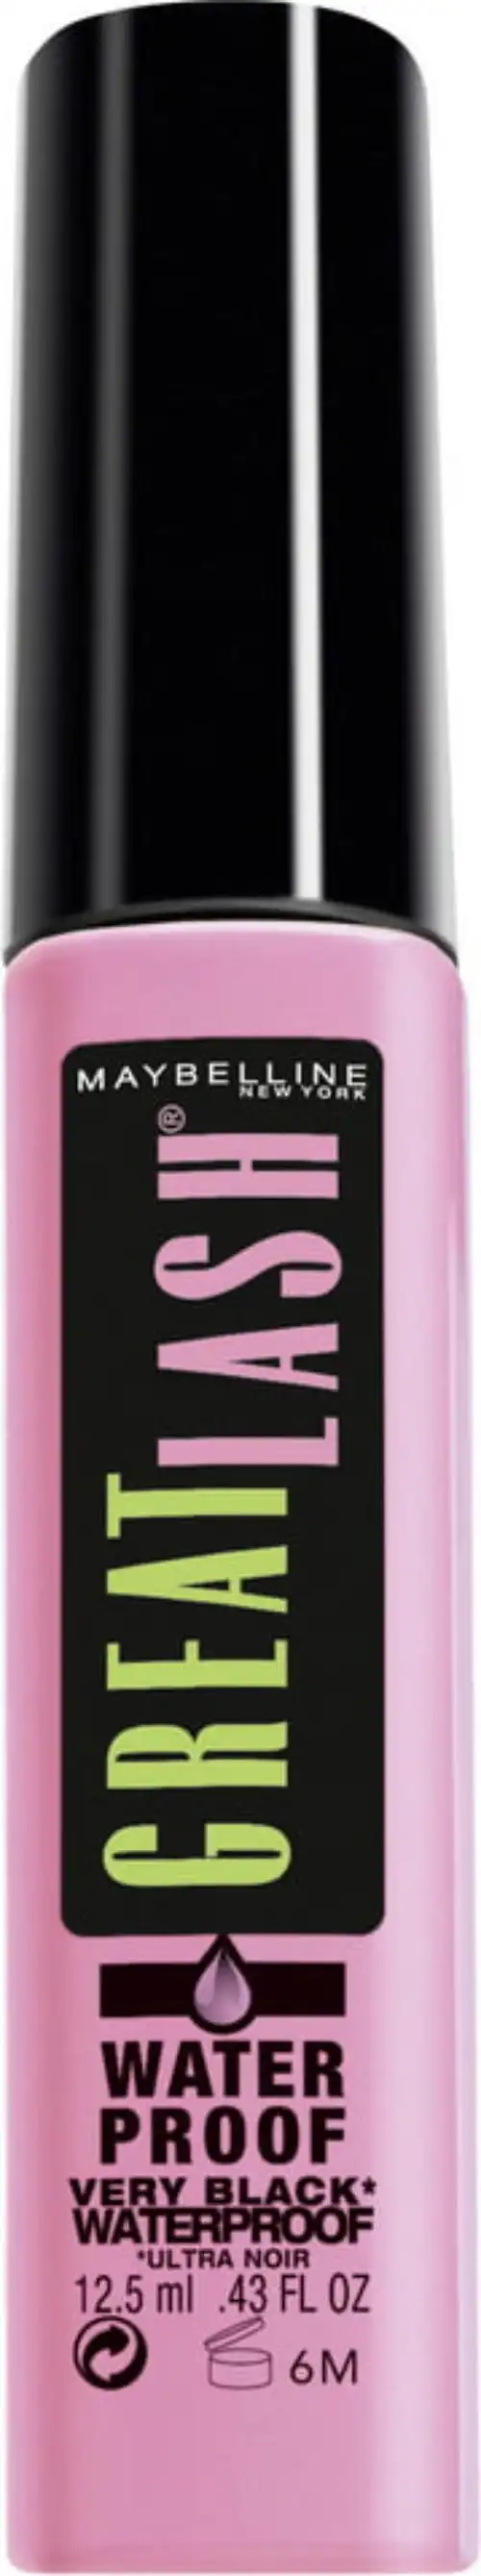 Maybelline Great Lash Waterproof Mascara Very Black